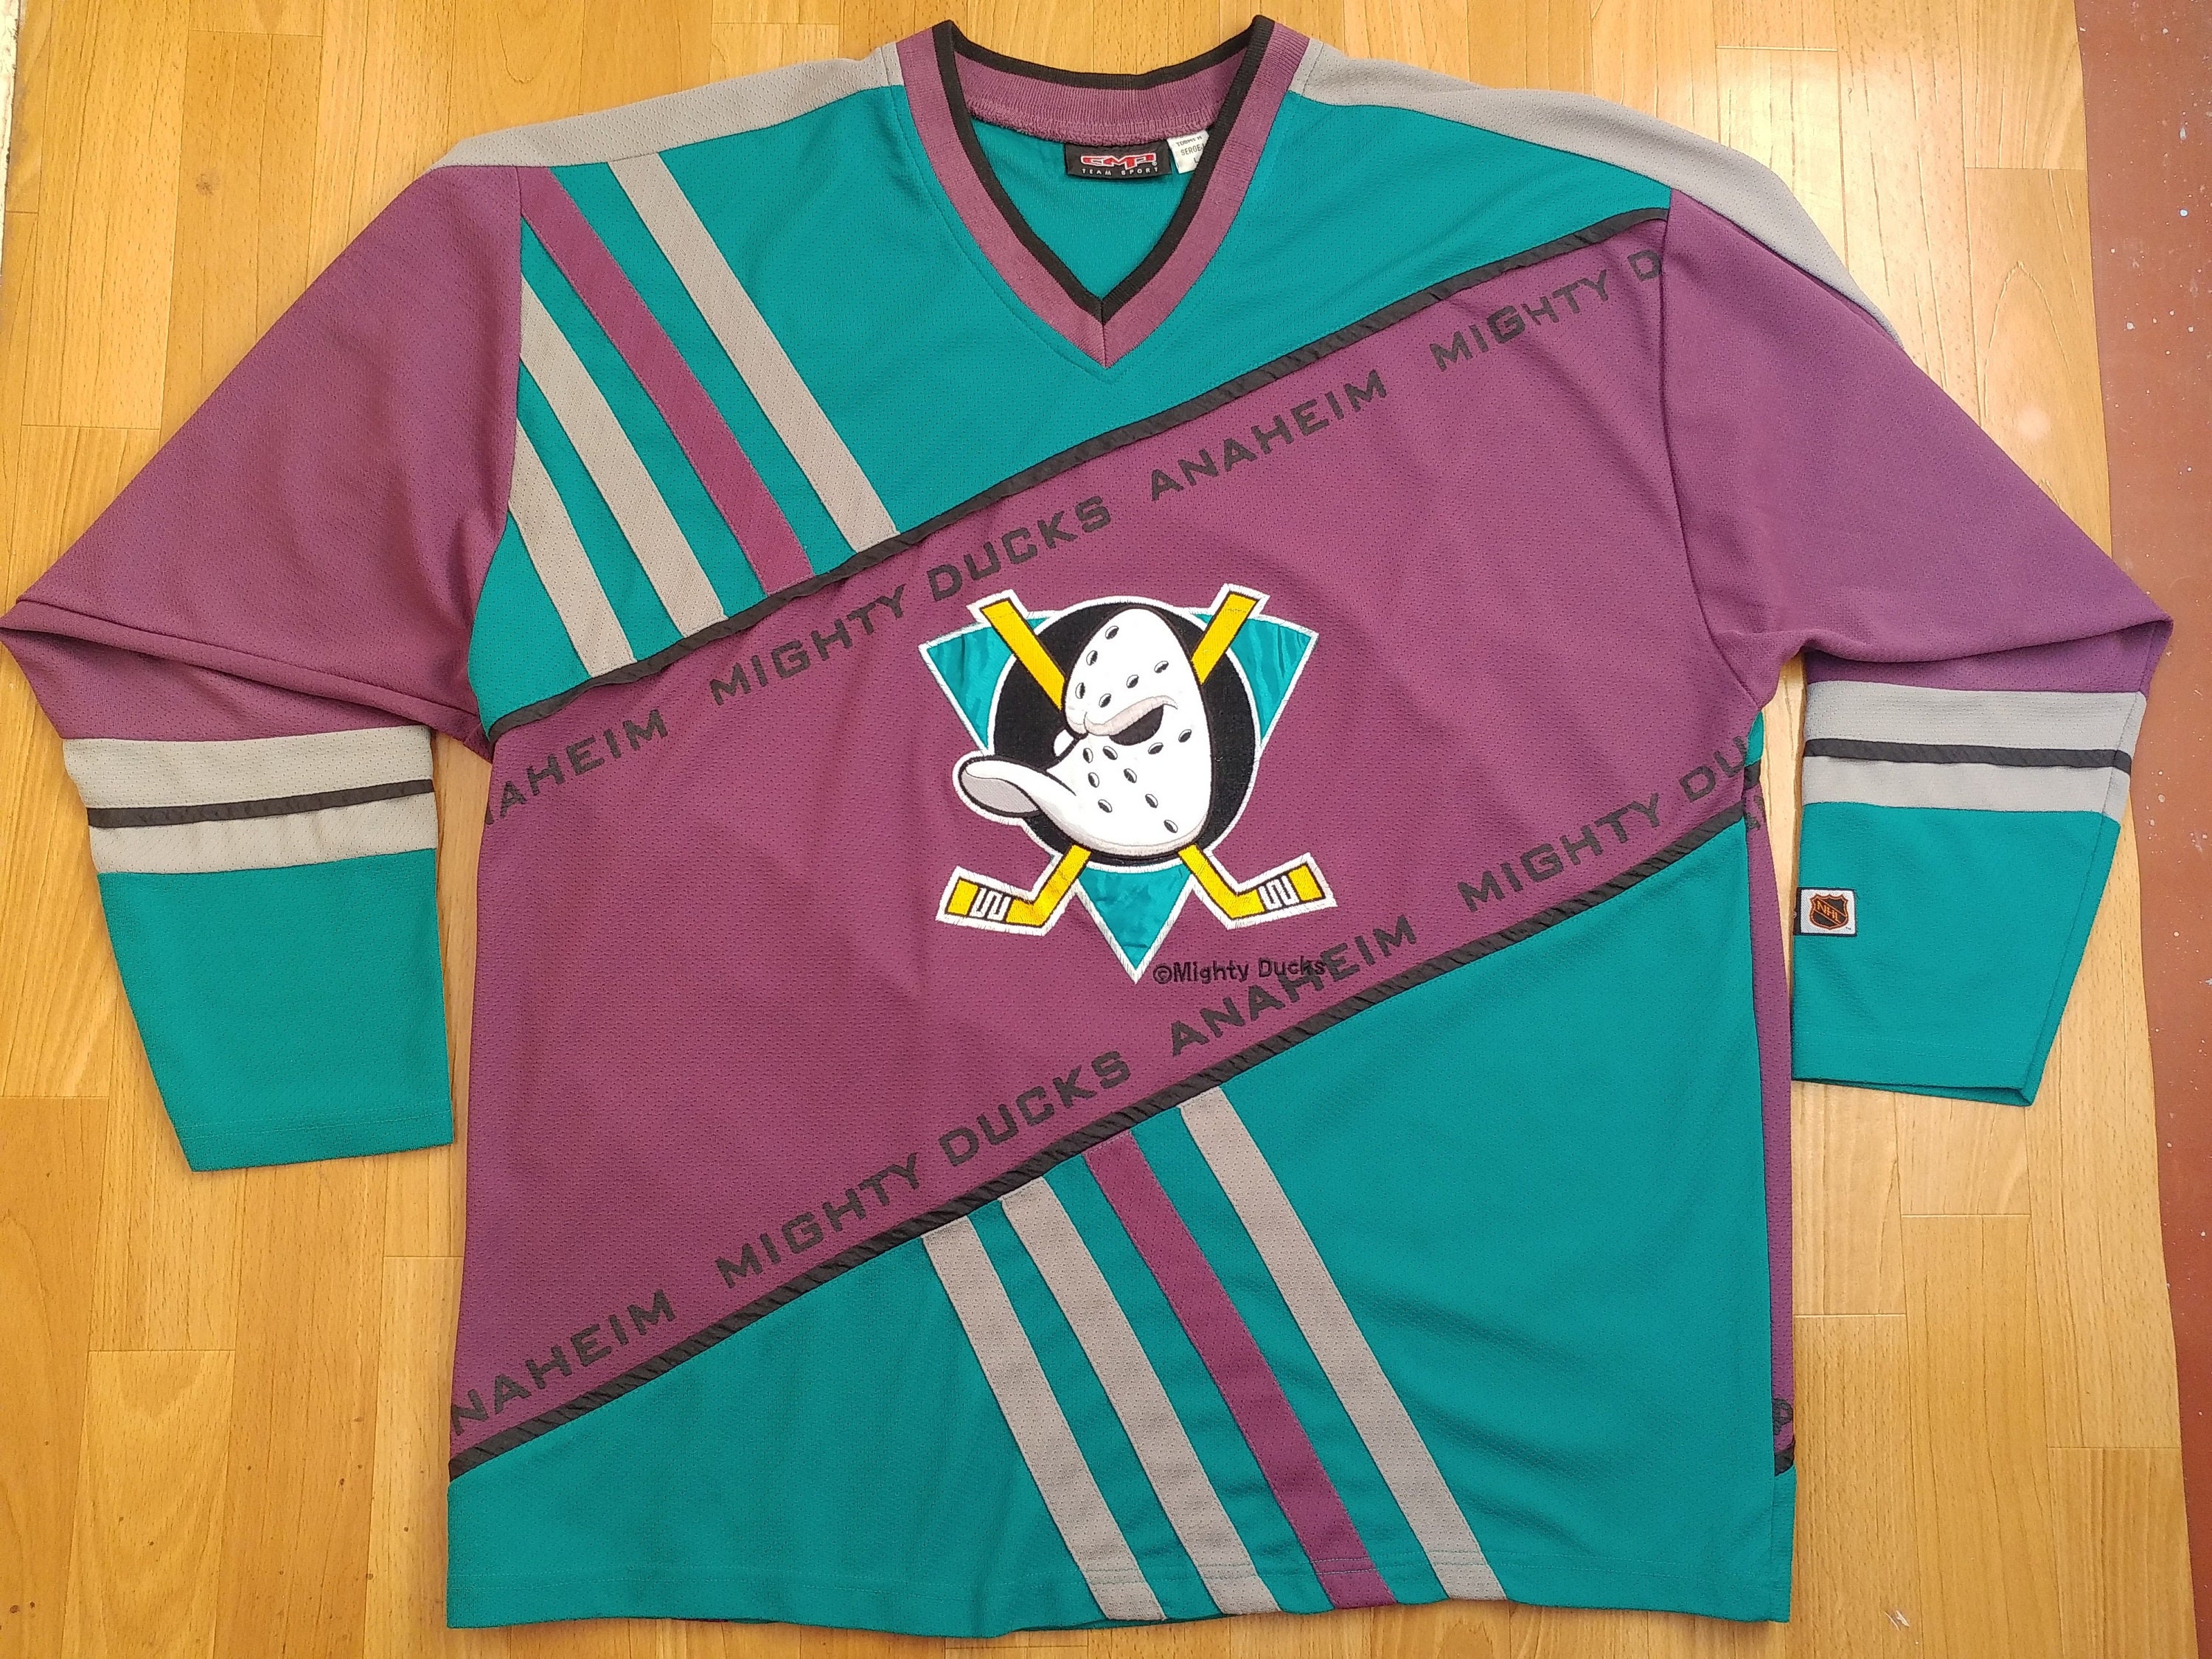 Anaheim Ducks Jerseys, Ducks Hockey Jerseys, Authentic Ducks